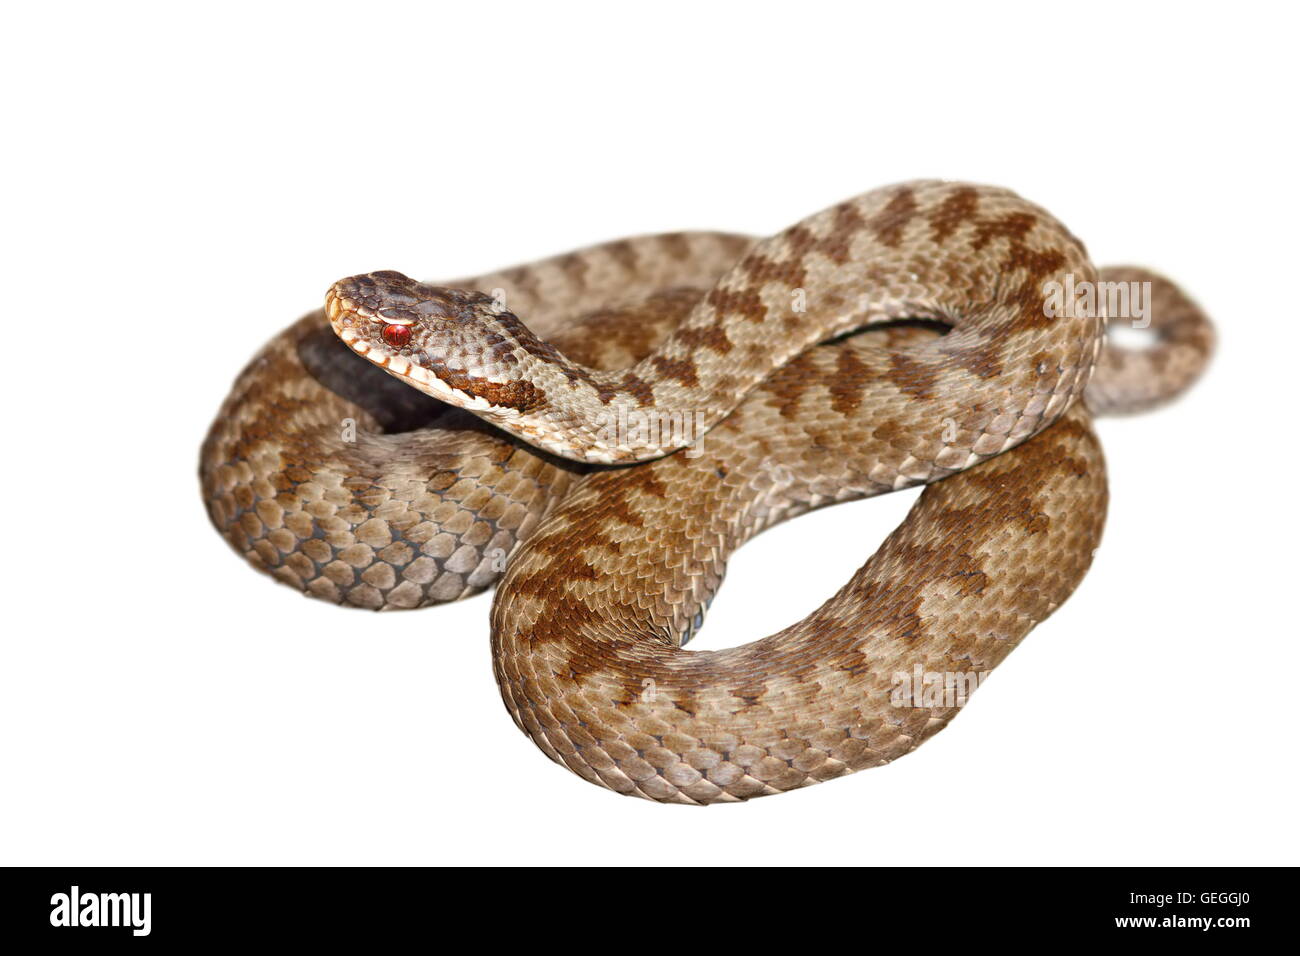 Europeo di serpenti velenosi, Vipera berus, i comuni attraversati sommatore, isolamento su sfondo bianco Foto Stock